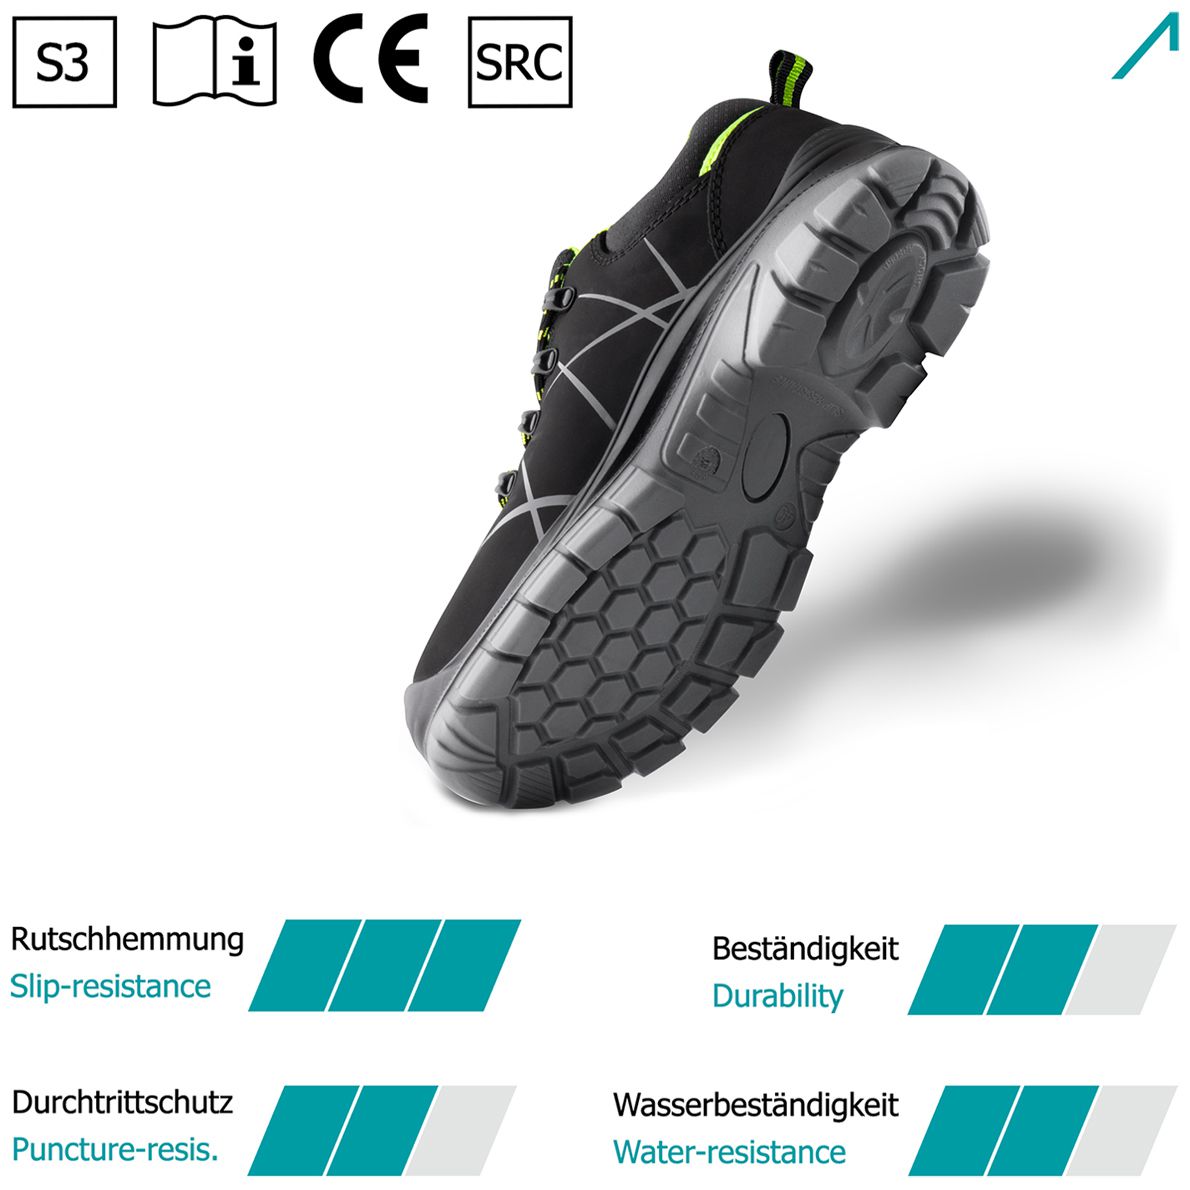 ACE Constructor S3-Arbeits-Sneakers - mit Stahlkappe - Sicherheits-Schuhe für die Arbeit  - Schwarz/Grün - 38